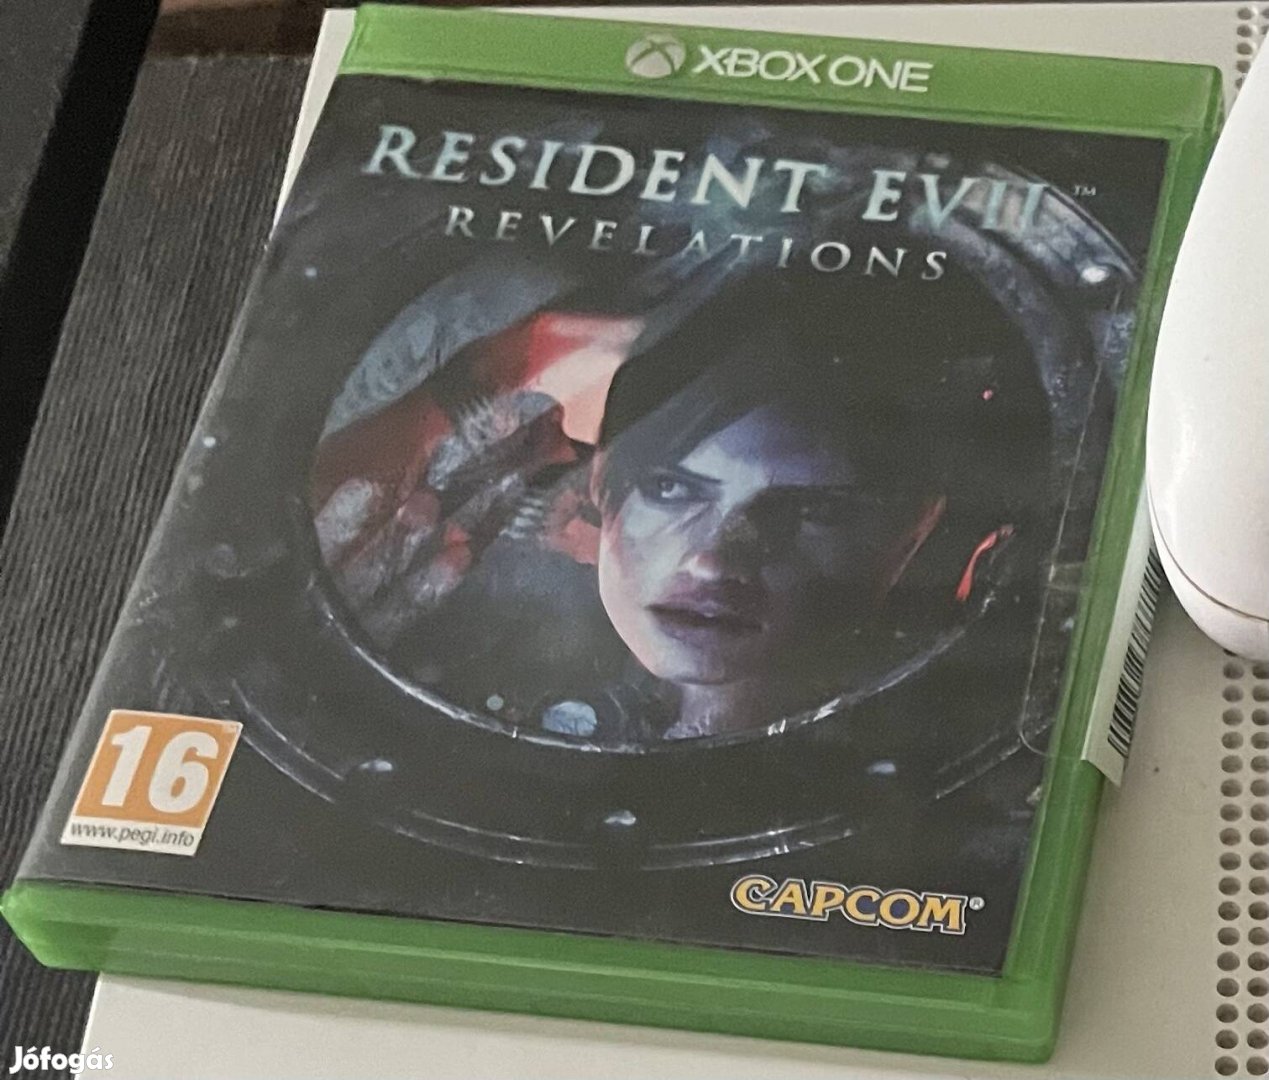 Eladó Resident Evil revelations Xbox one játék